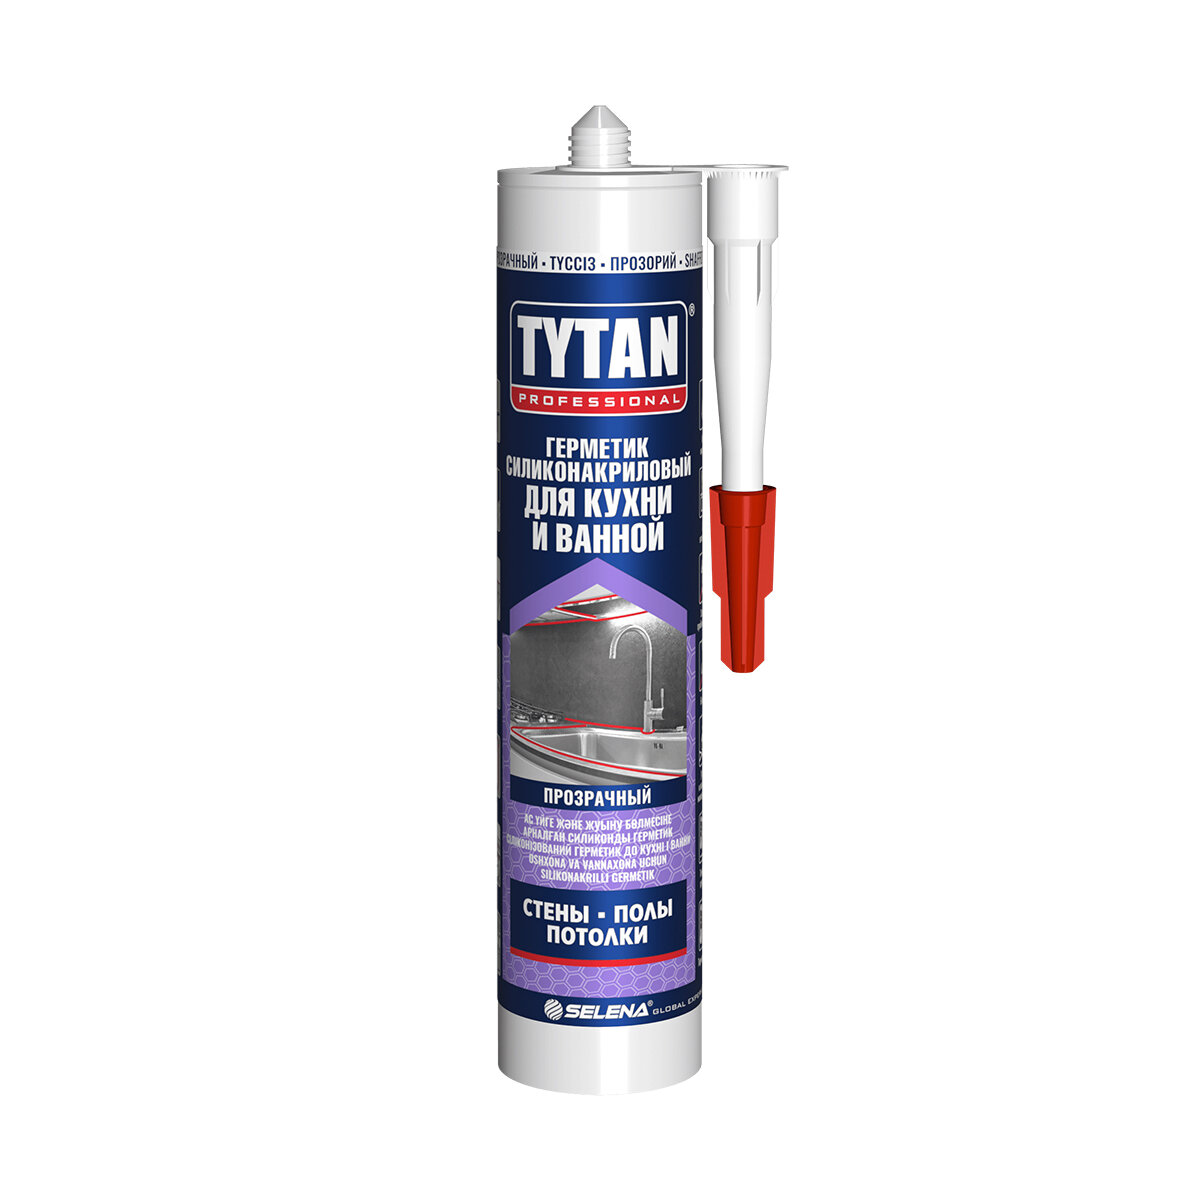 Герметик Tytan Professional для кухни и ванной